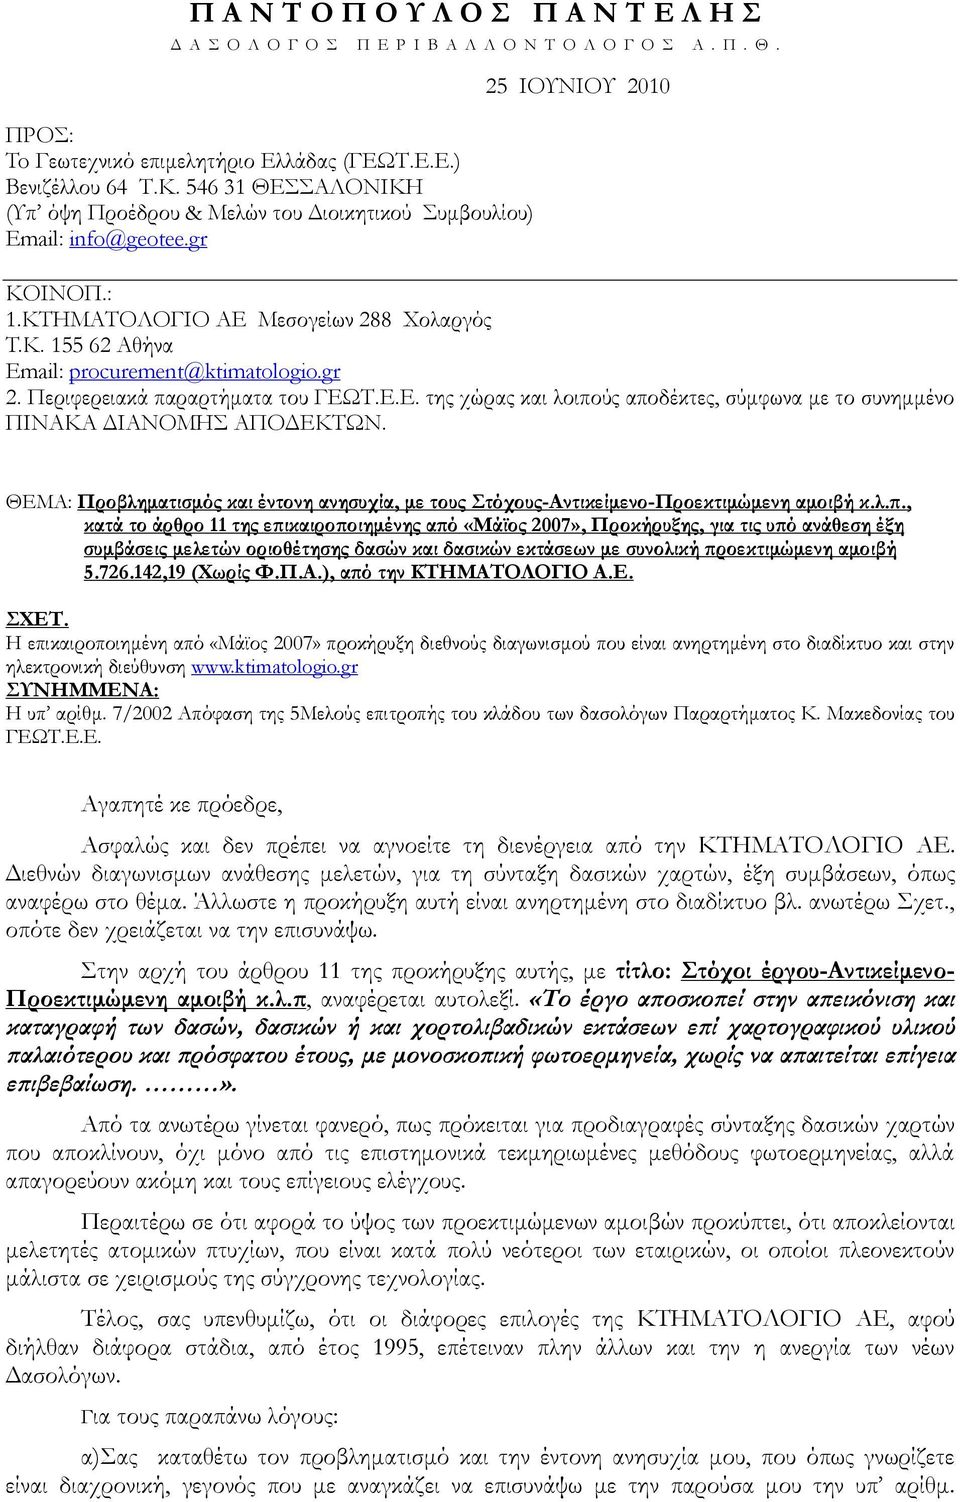 155 62 Αθήνα Email: procurement@ktimatologio.gr 2. Περιφερειακά παραρτήματα του ΓΕΩΤ.Ε.Ε. της χώρας και λοιπούς αποδέκτες, σύμφωνα με το συνημμένο ΠΙΝΑΚΑ ΔΙΑΝΟΜΗΣ ΑΠΟΔΕΚΤΩΝ.